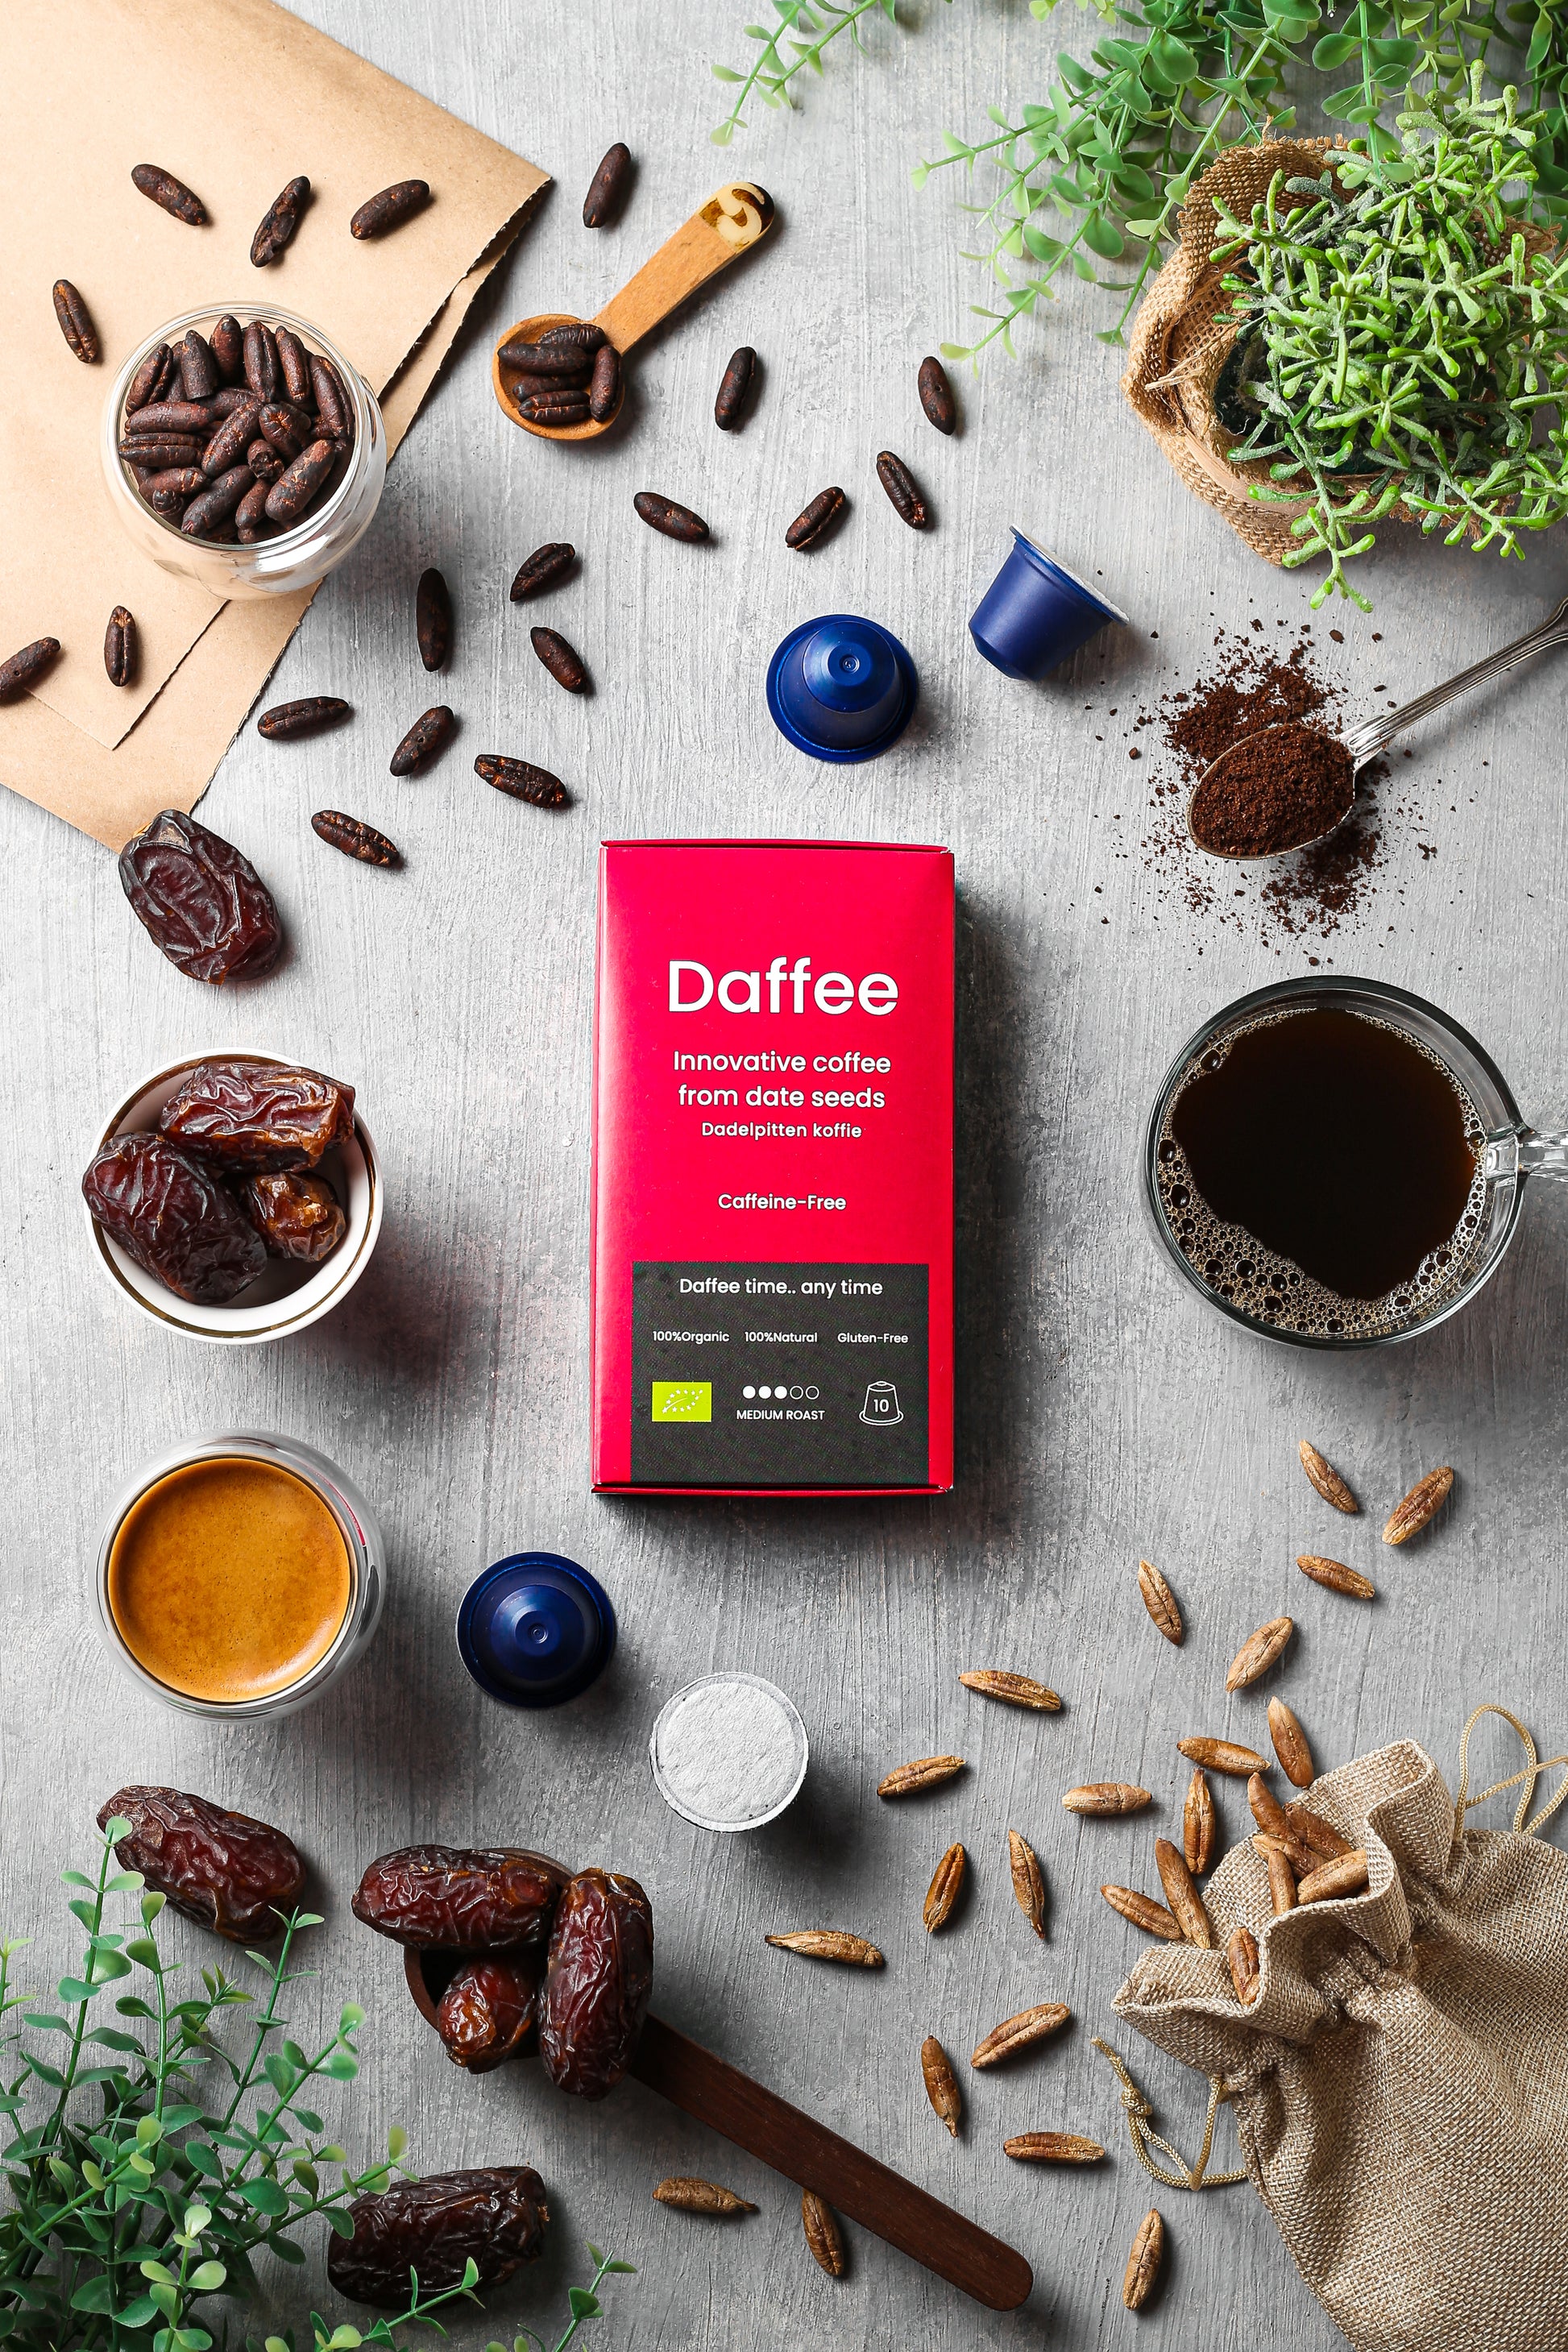 Overzicht van Daffee producten inclusief date seeds, geroosterde bonen, koffiecapsules en vers gezette Daffee, met rode verpakking en plantendecor.